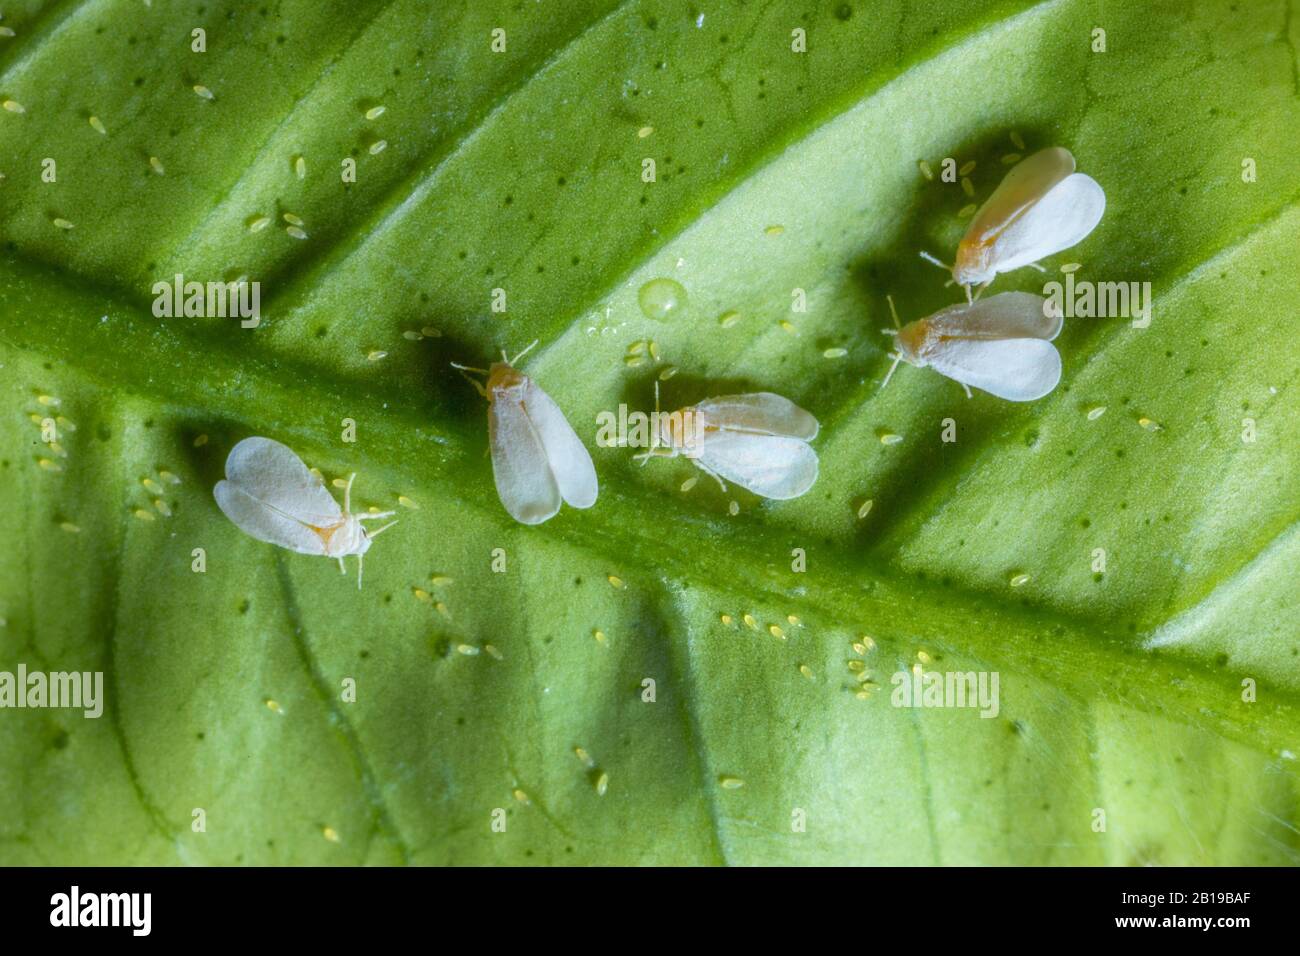 Serra bianca (Trialeurodes vaporariorum), gruppo che depone le uova su una foglia di limone, vista dall'alto Foto Stock